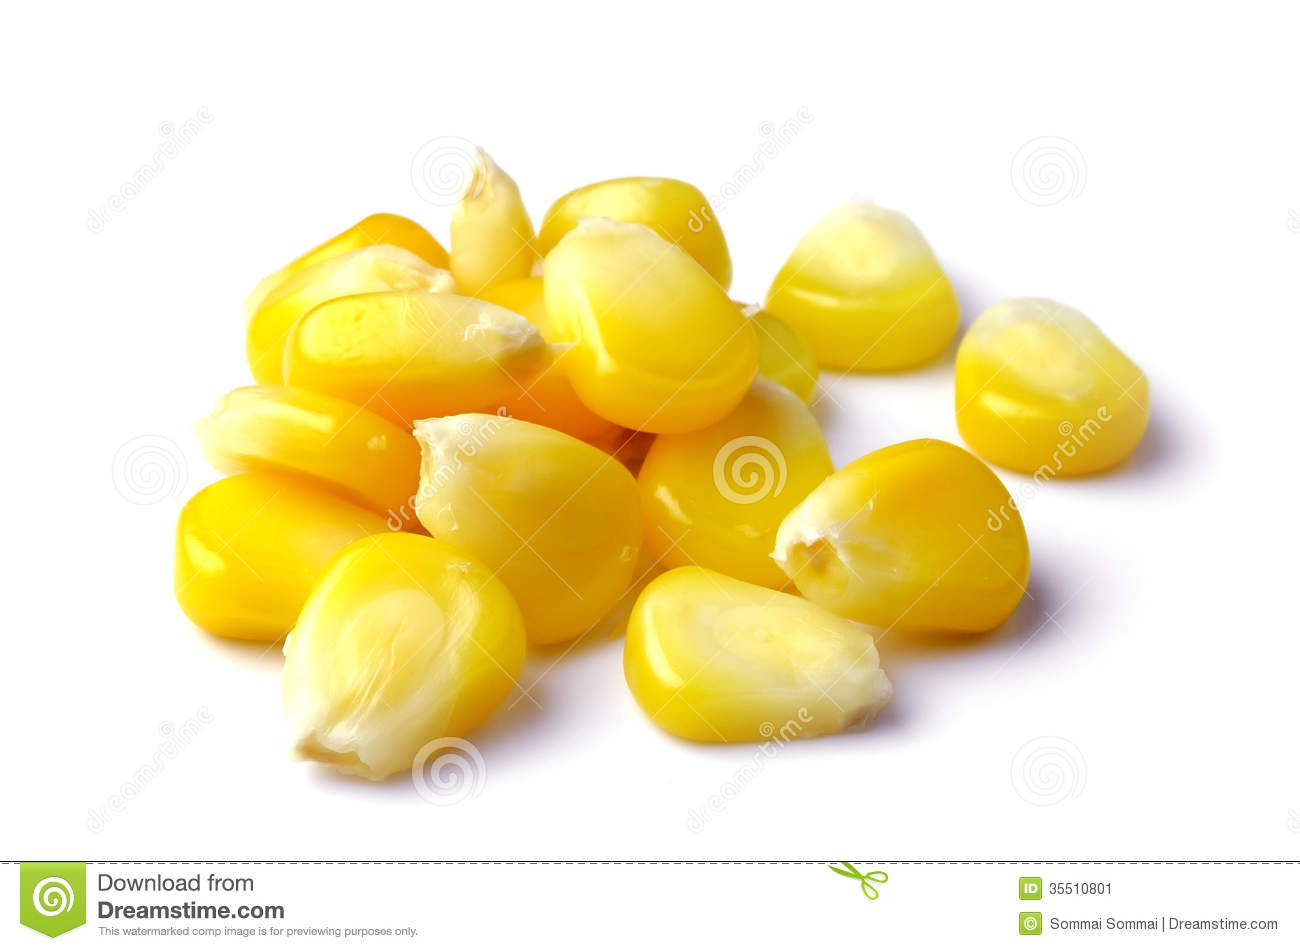 Sweet Whole Kernel Corn Stock Image   Image  35510801